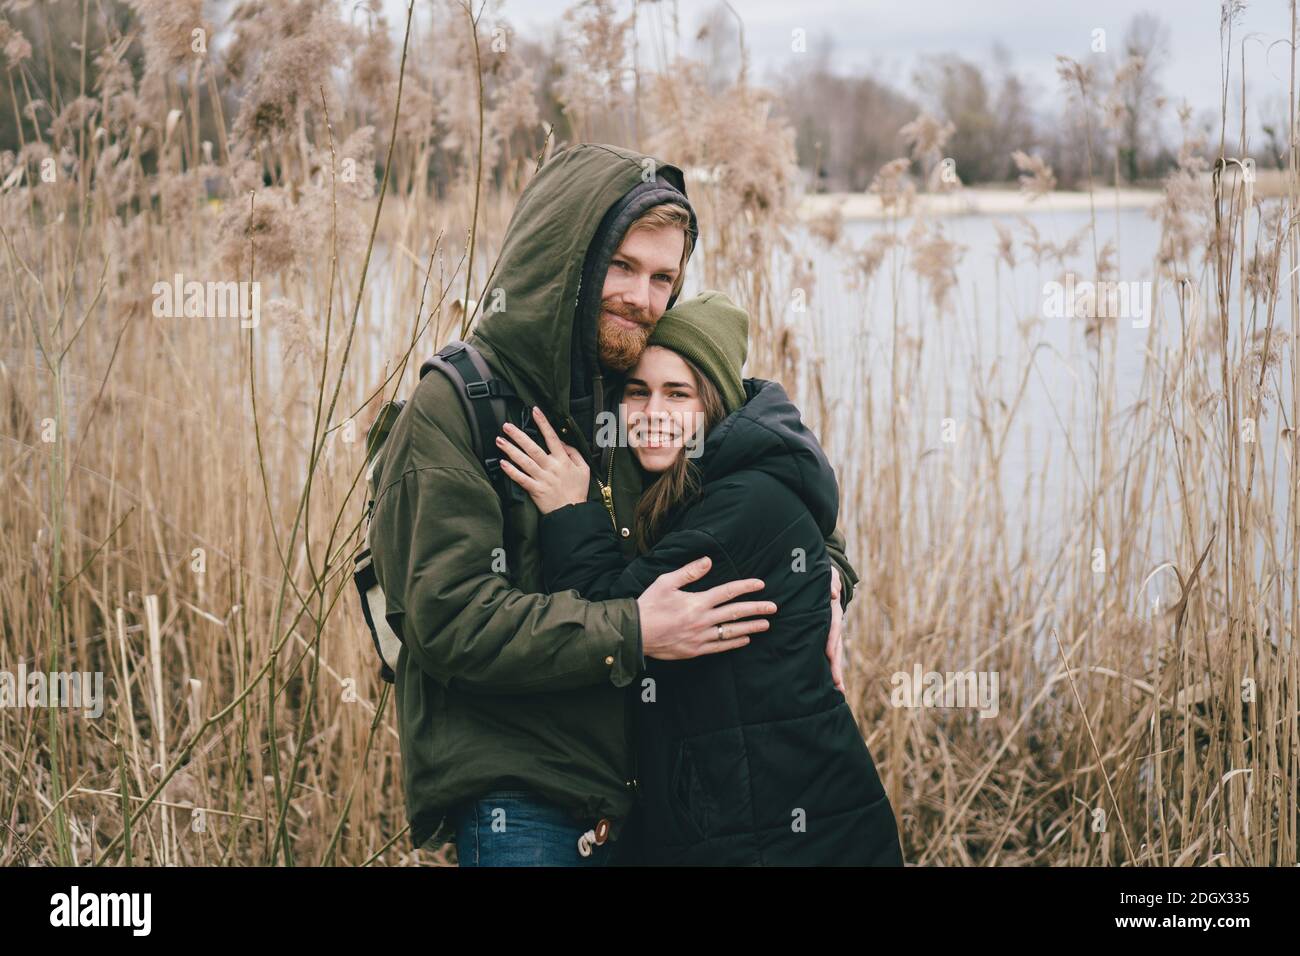 Ein junges kaukasisches Paar in der Liebe steht in einer Umarmung in der Nähe eines Sees und Schilf. Wochenenden und Spaziergänge in der Natur. Erholung im Freien Stockfoto